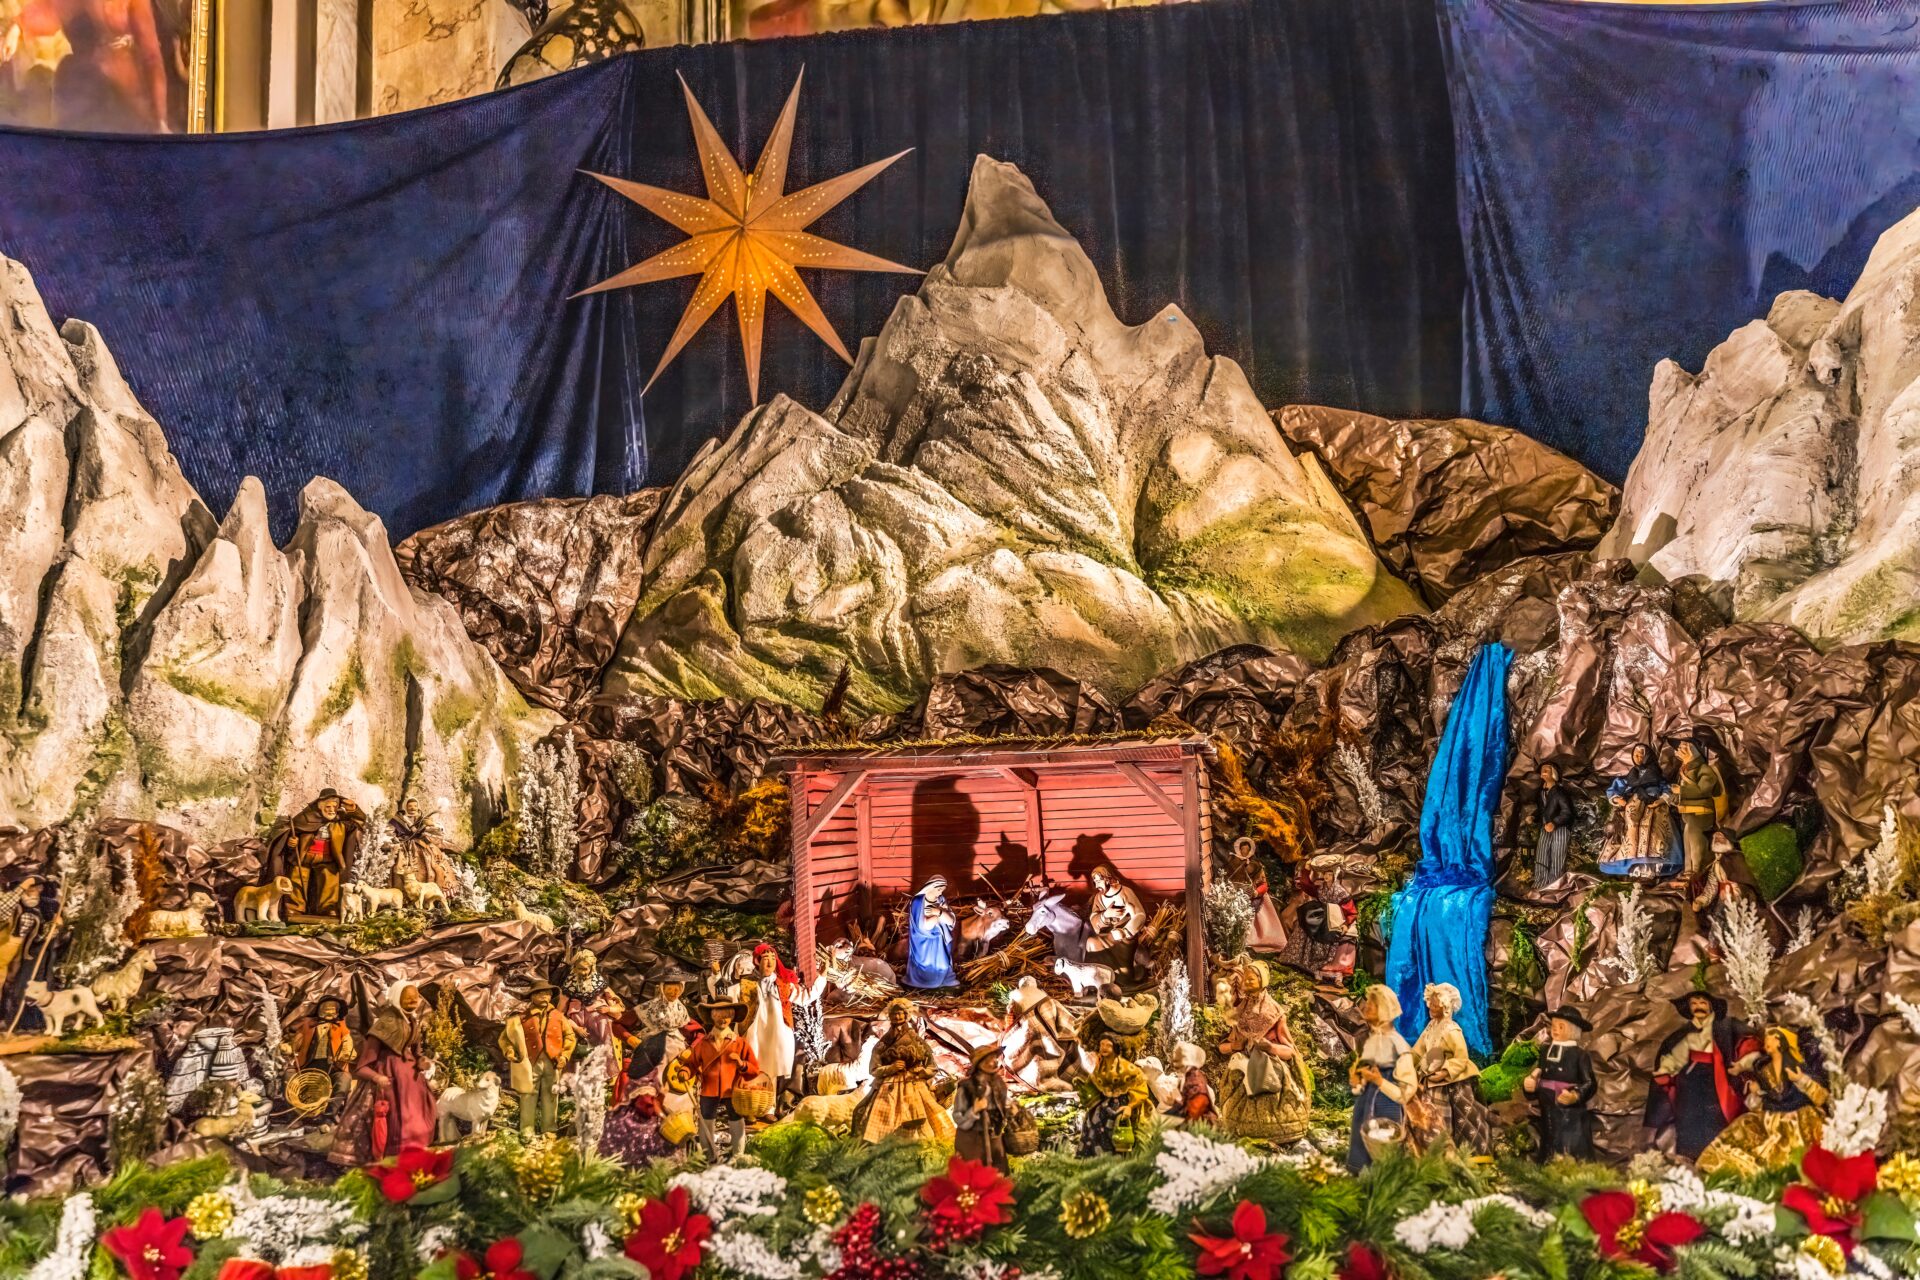 French nativity scenes